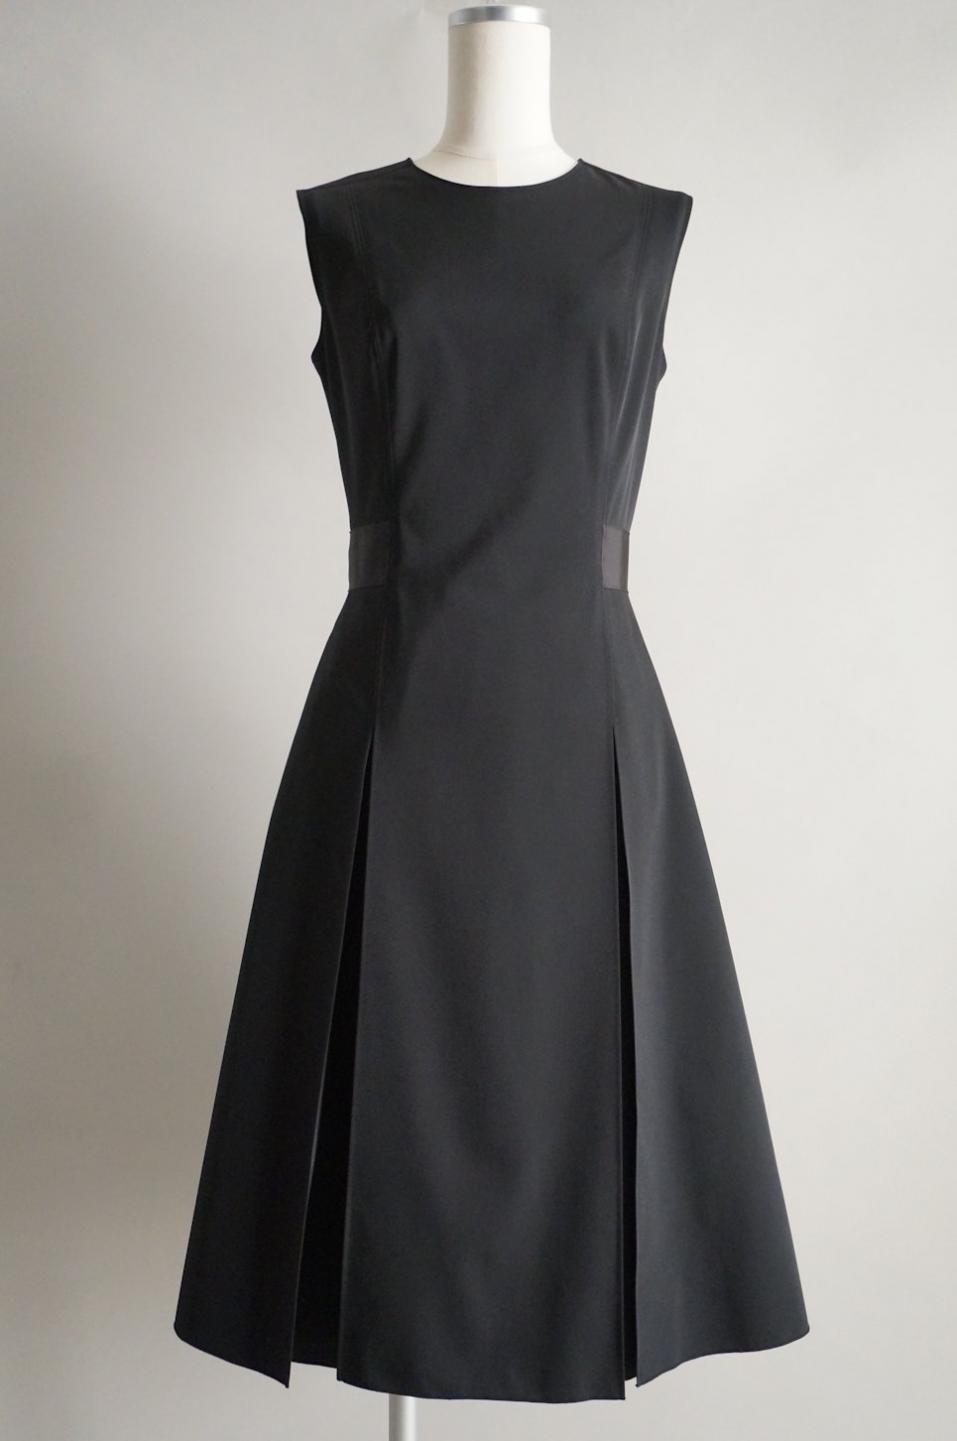 FOXEY NY ボックスプリーツワンピースドレス / レンタルリトルブラックドレス テン Rental Little Black Dress